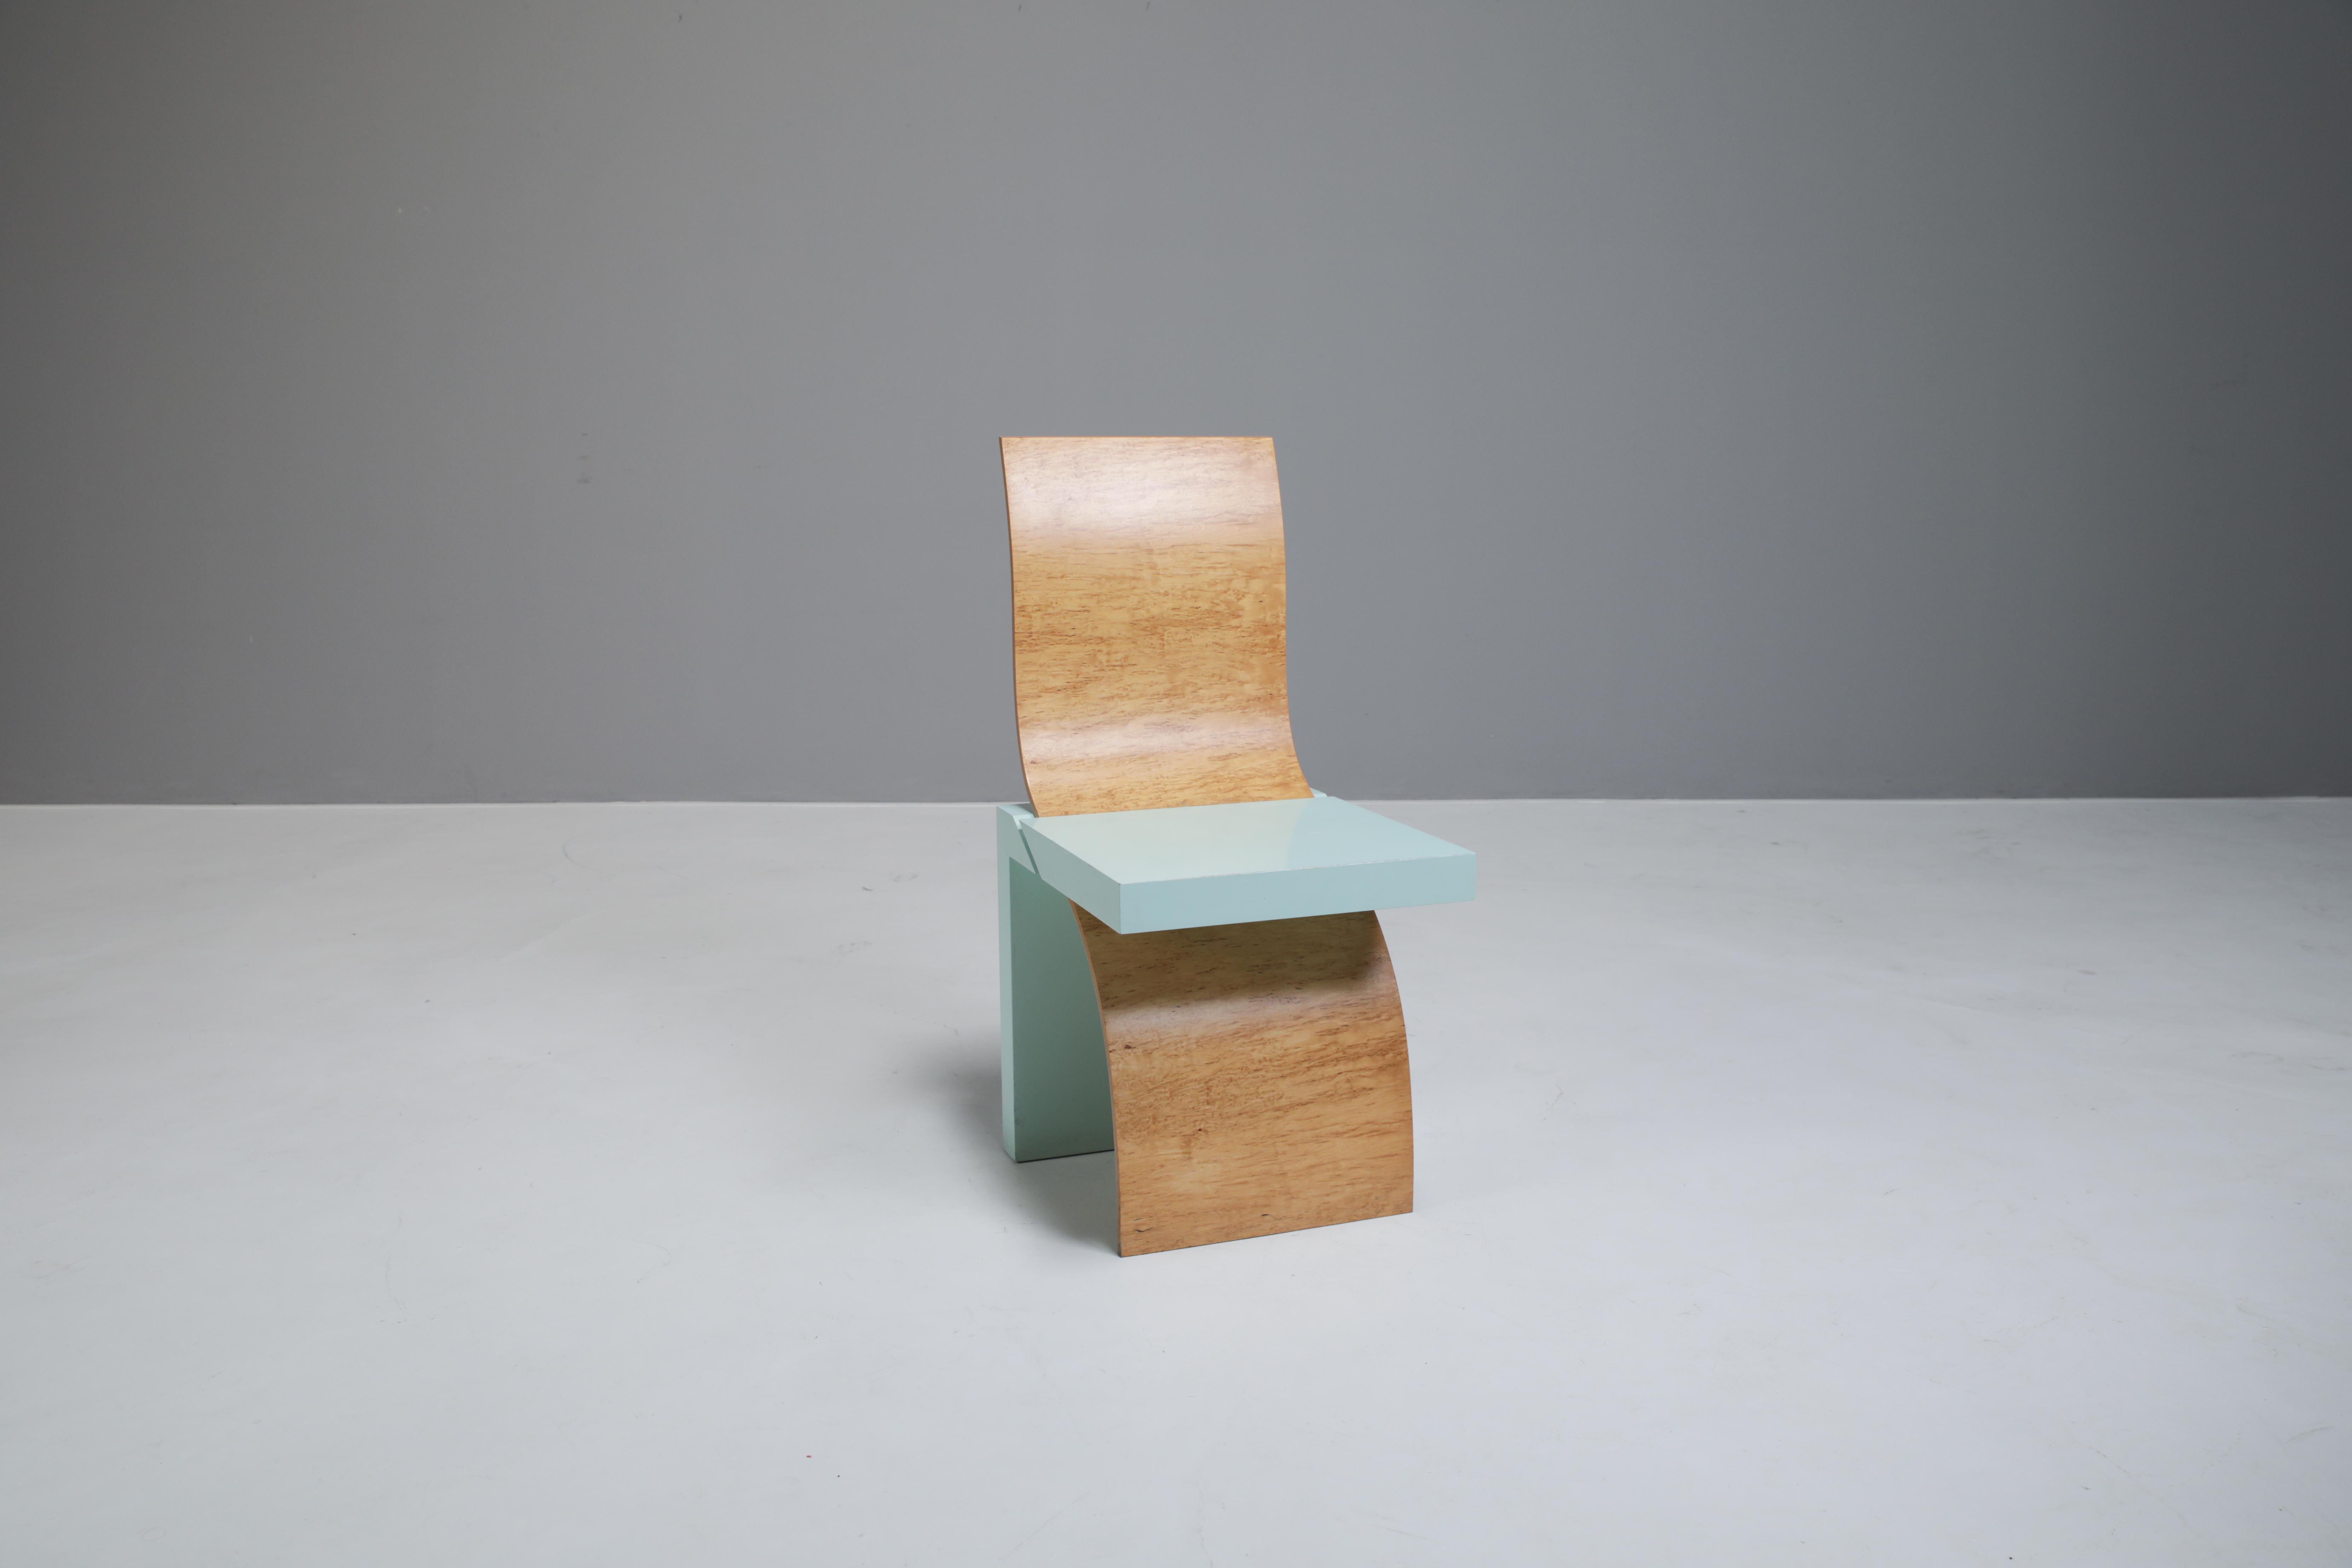 Pour le compte de Design/One, Cremer & Cremer, connu pour la réalisation de prototypes pour des designers internationaux, a produit la chaise Leda.
L'élément incurvé de la chaise d'Angela Oedekoven est en placage de bouleau et l'assise en bois